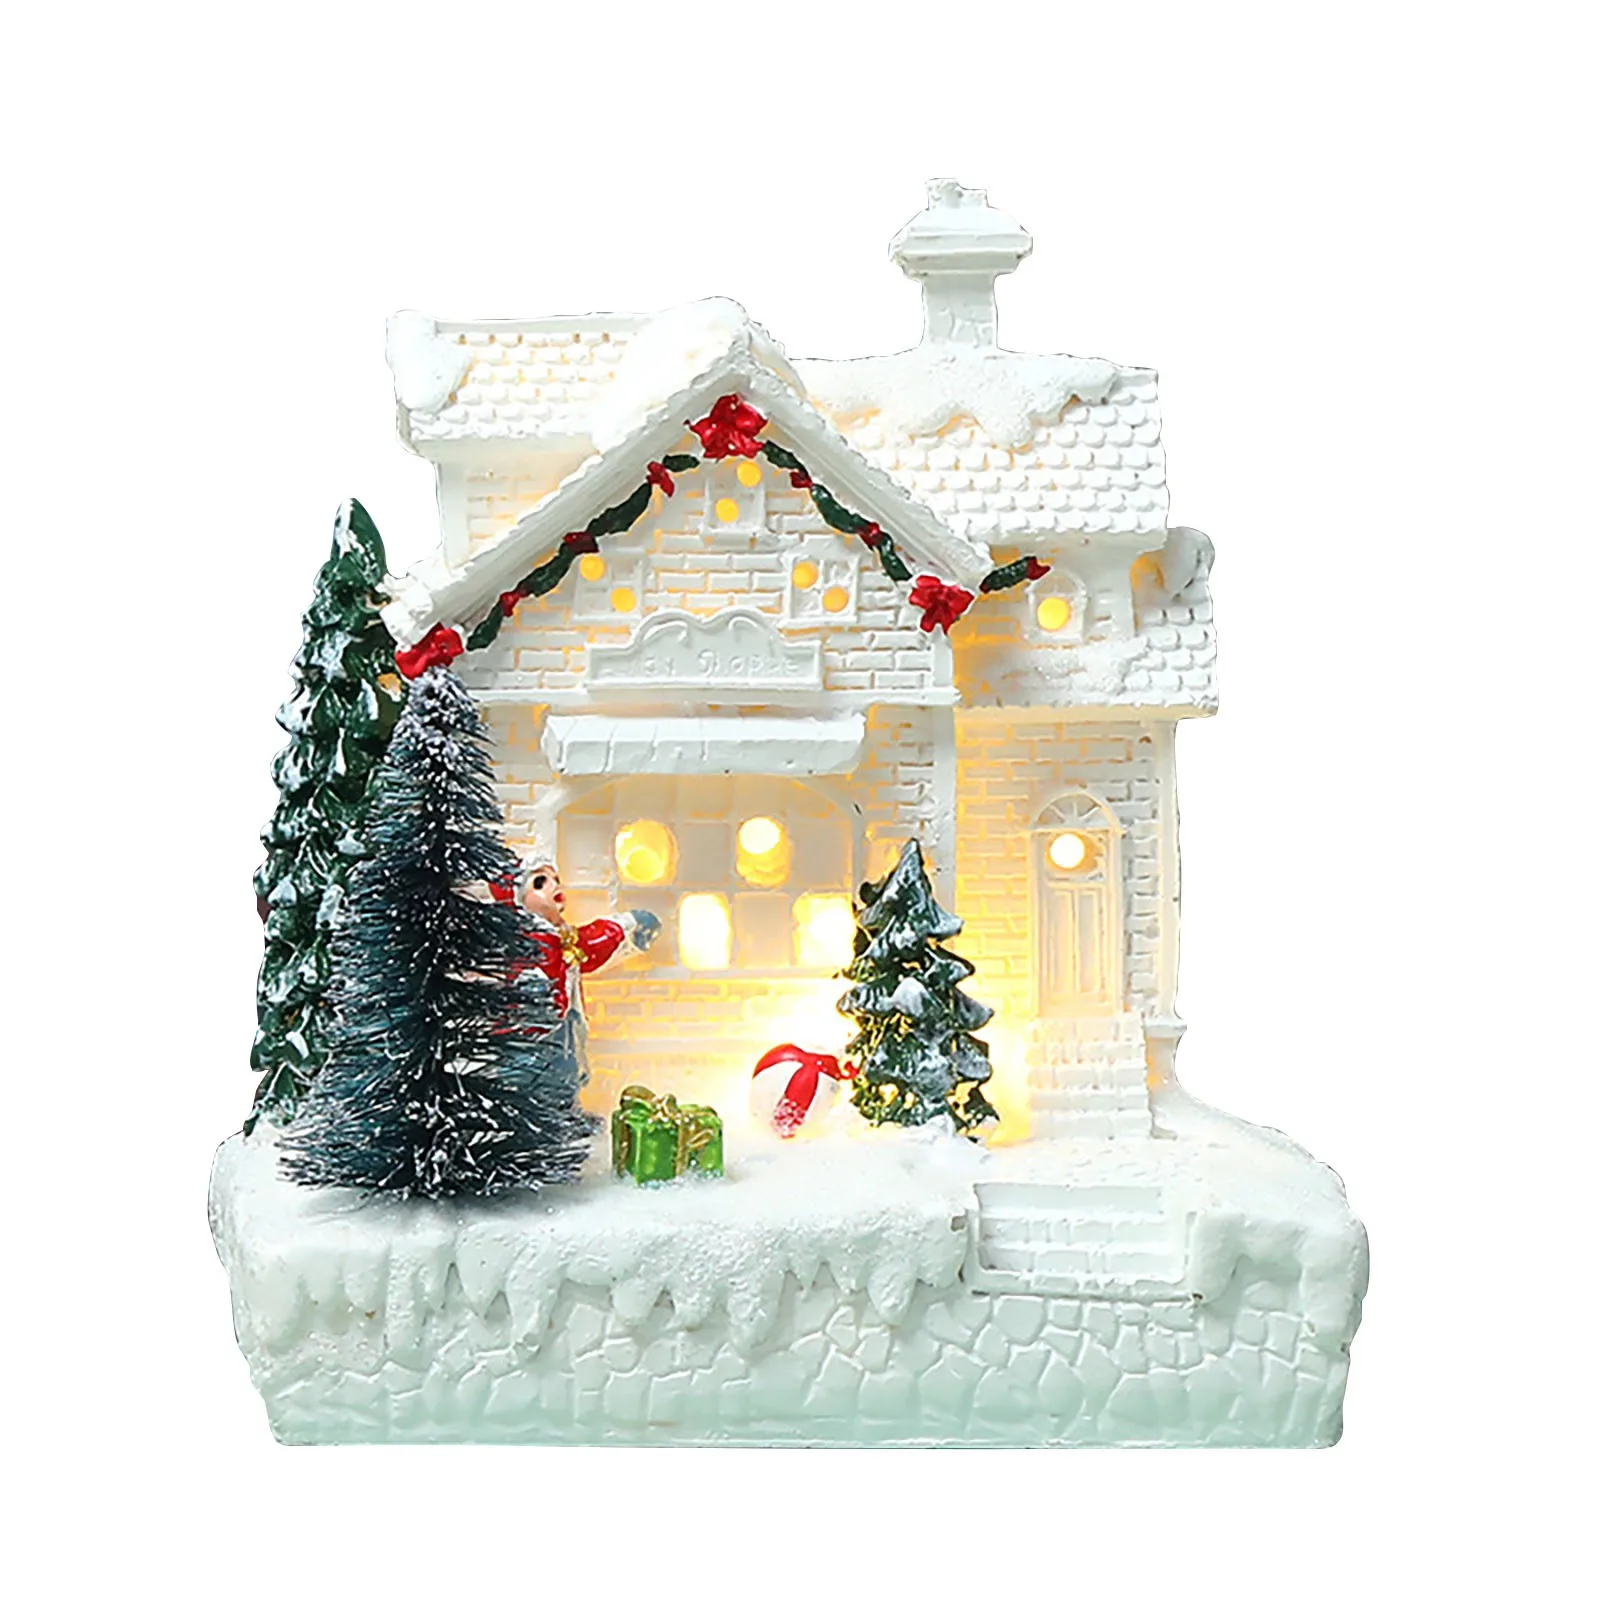 Brillie Villaggio in Resina con Scena di Natale e Statuette con Decorazioni Natalizie a Luce LED Bianca Calda 